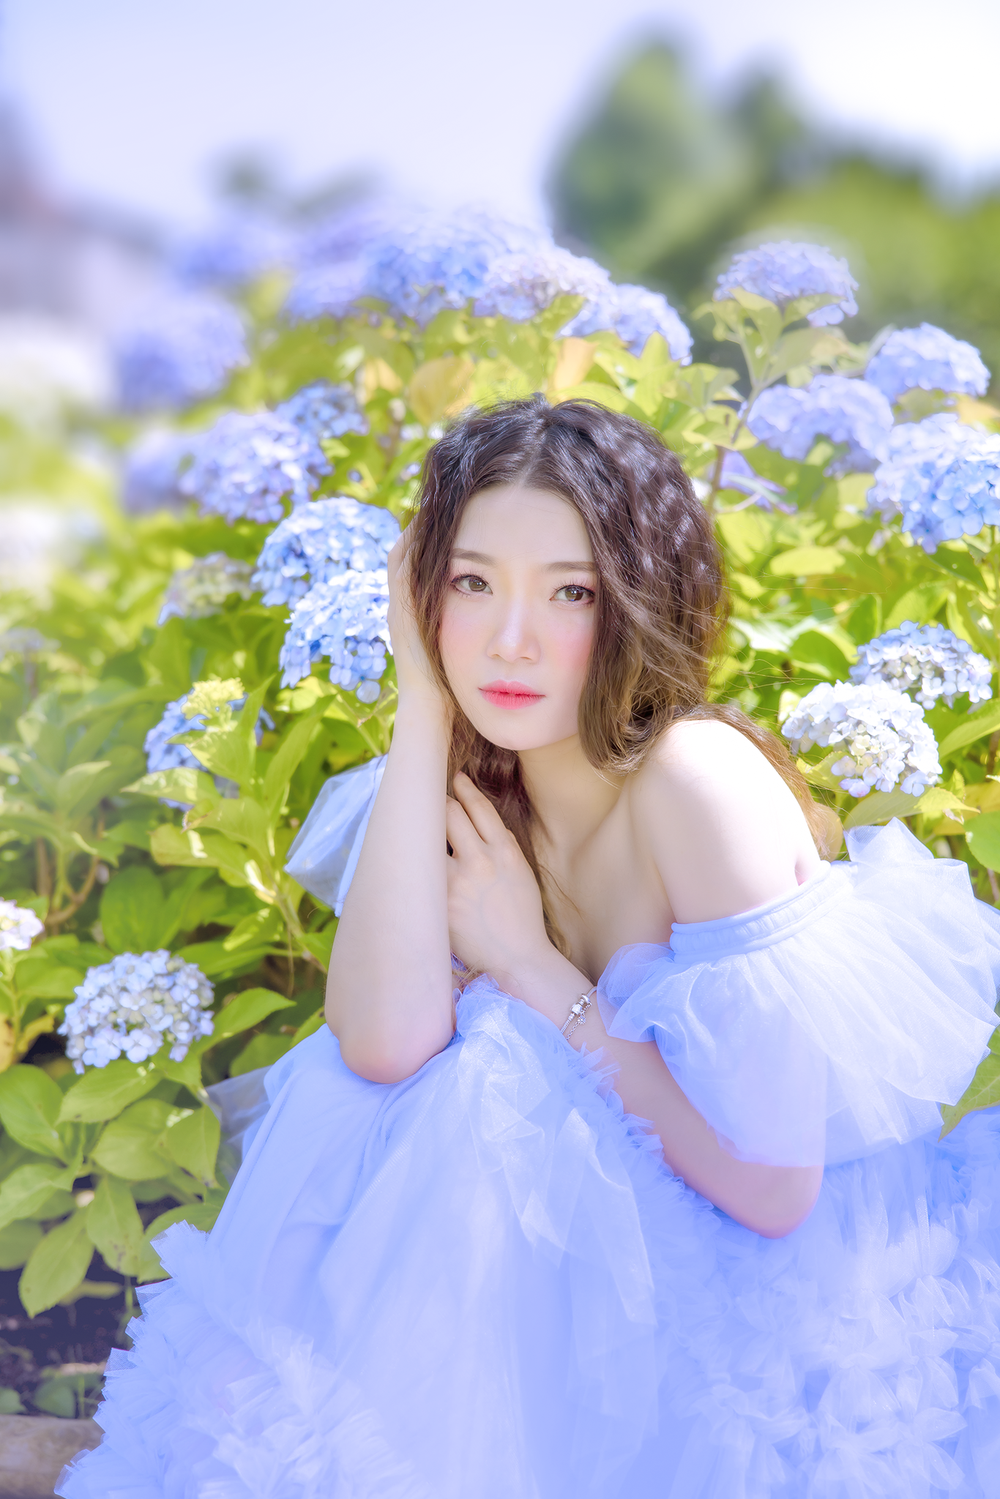 Ngắm bộ ảnh đẹp của cô nàng du học sinh Nhật Bản và nghe tâm sự về cuộc sống không chỉ có màu hồng - Ảnh 6.